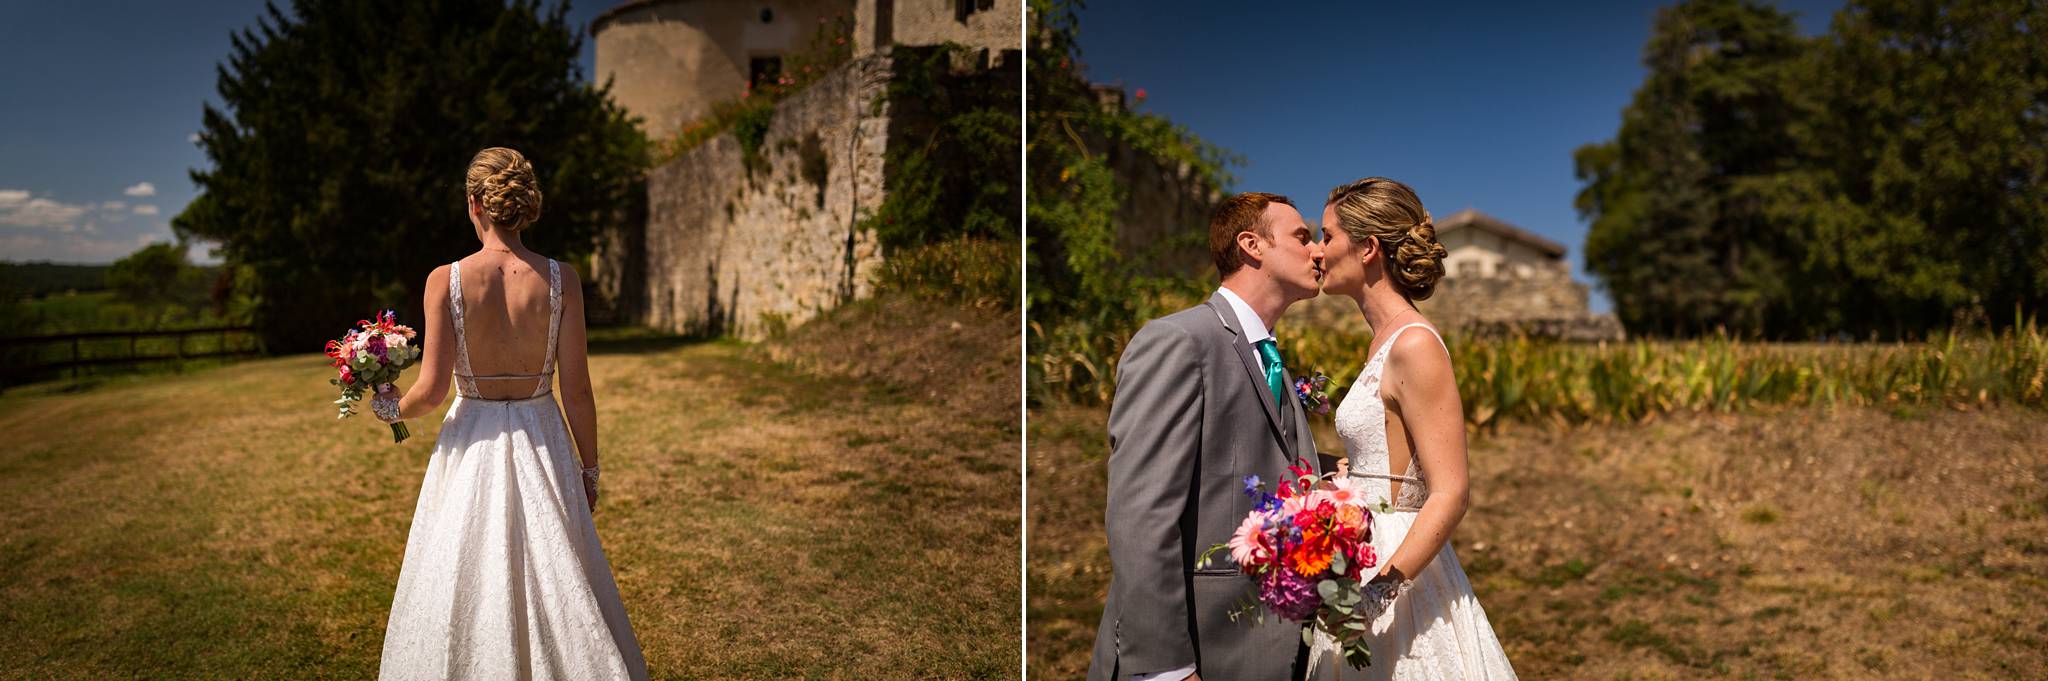 Le mariage au Chateau d'Auros de Mario et Jérémy, entre France et Californie où ils vivent. Jeux, photobooth et bonne humeur au programme !